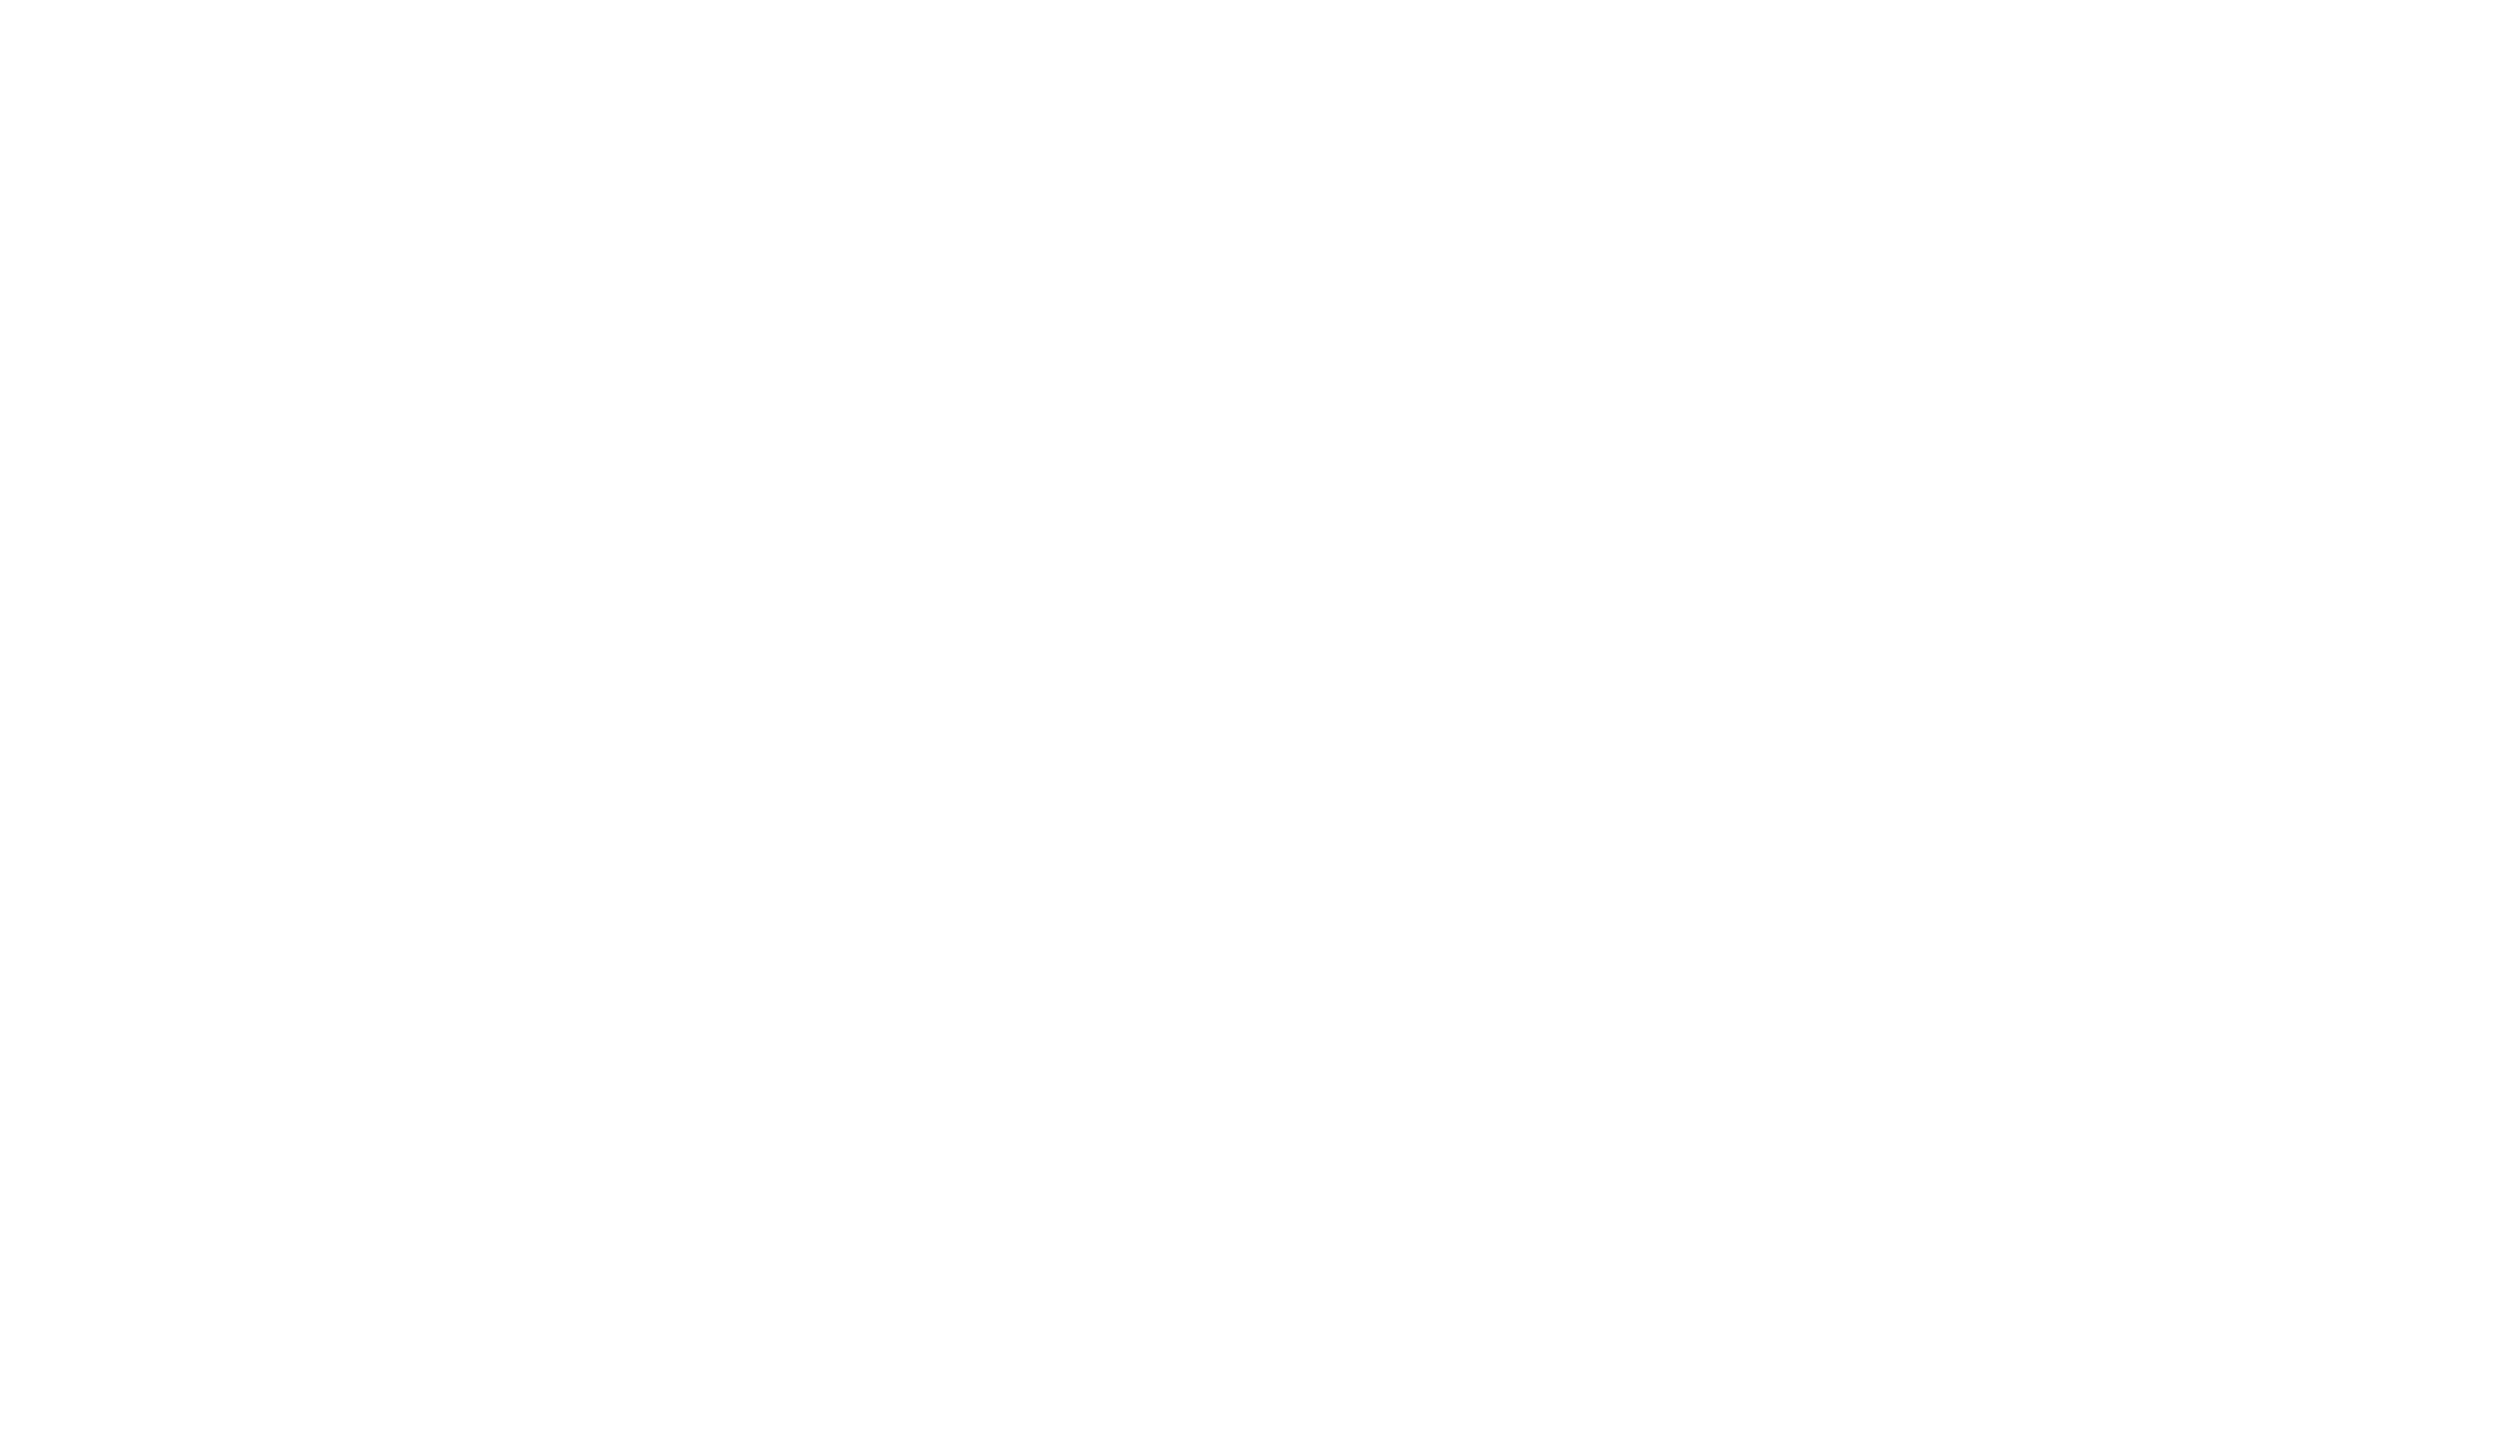 Body Restoration